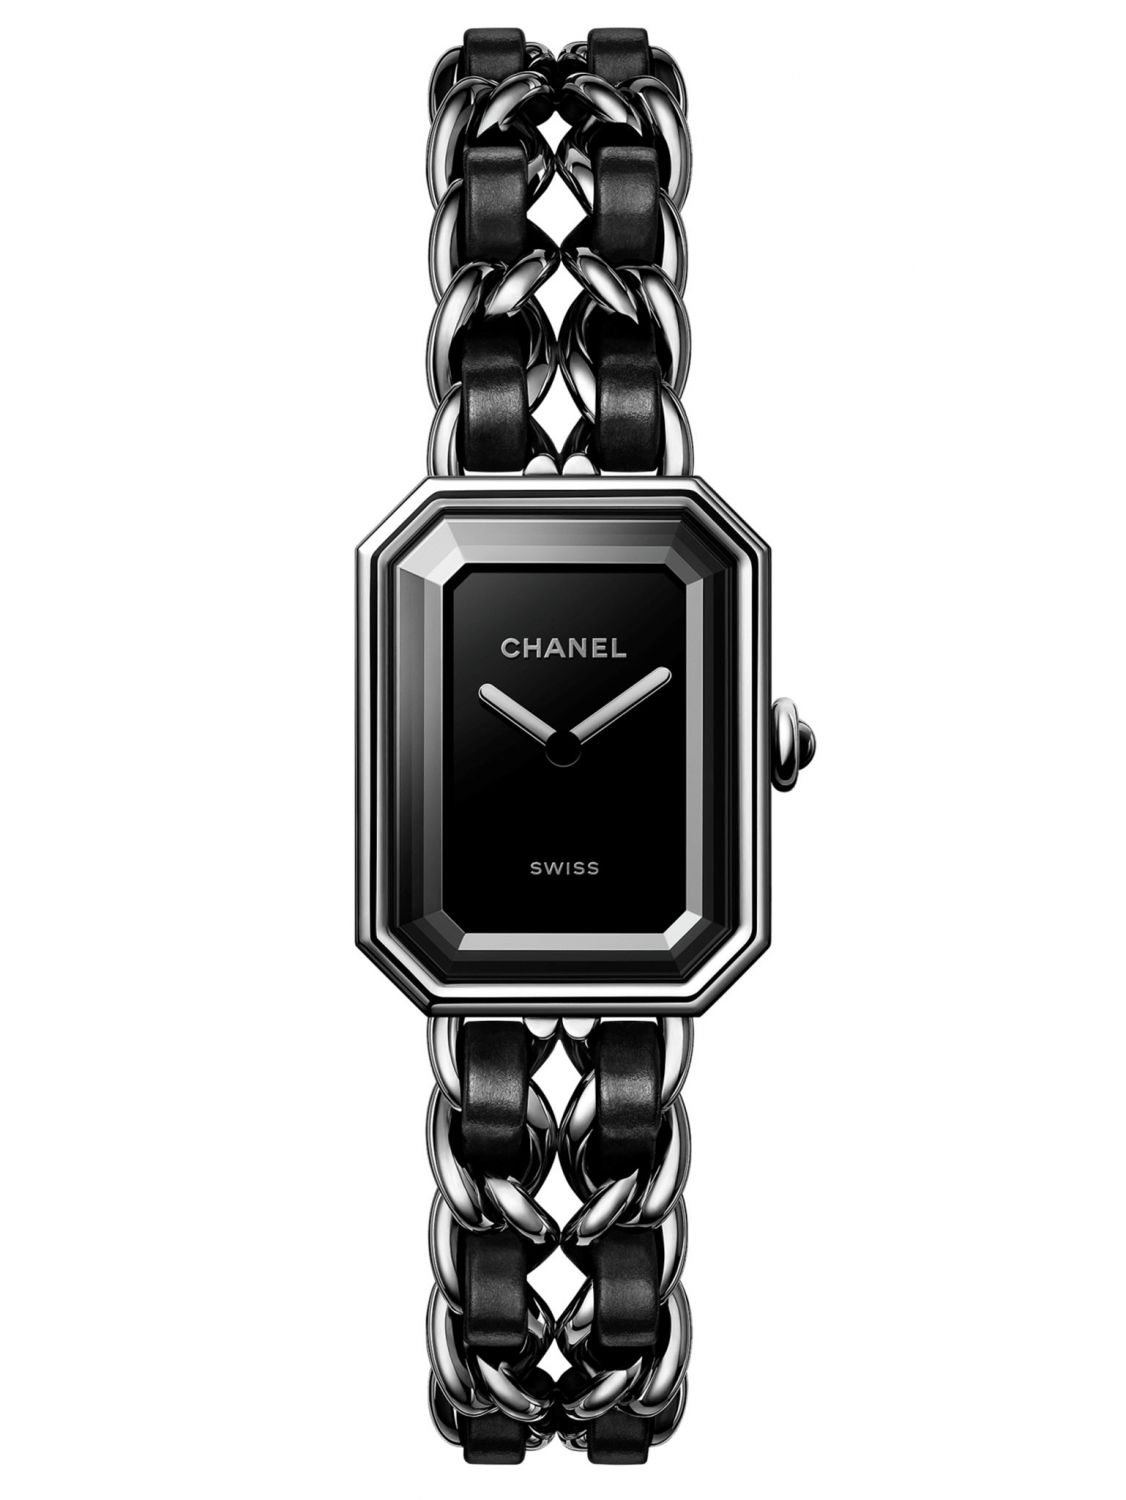 Đồng hồ Chanel  Premier  dây xích vàng  size L  Én shop hàng hiệu